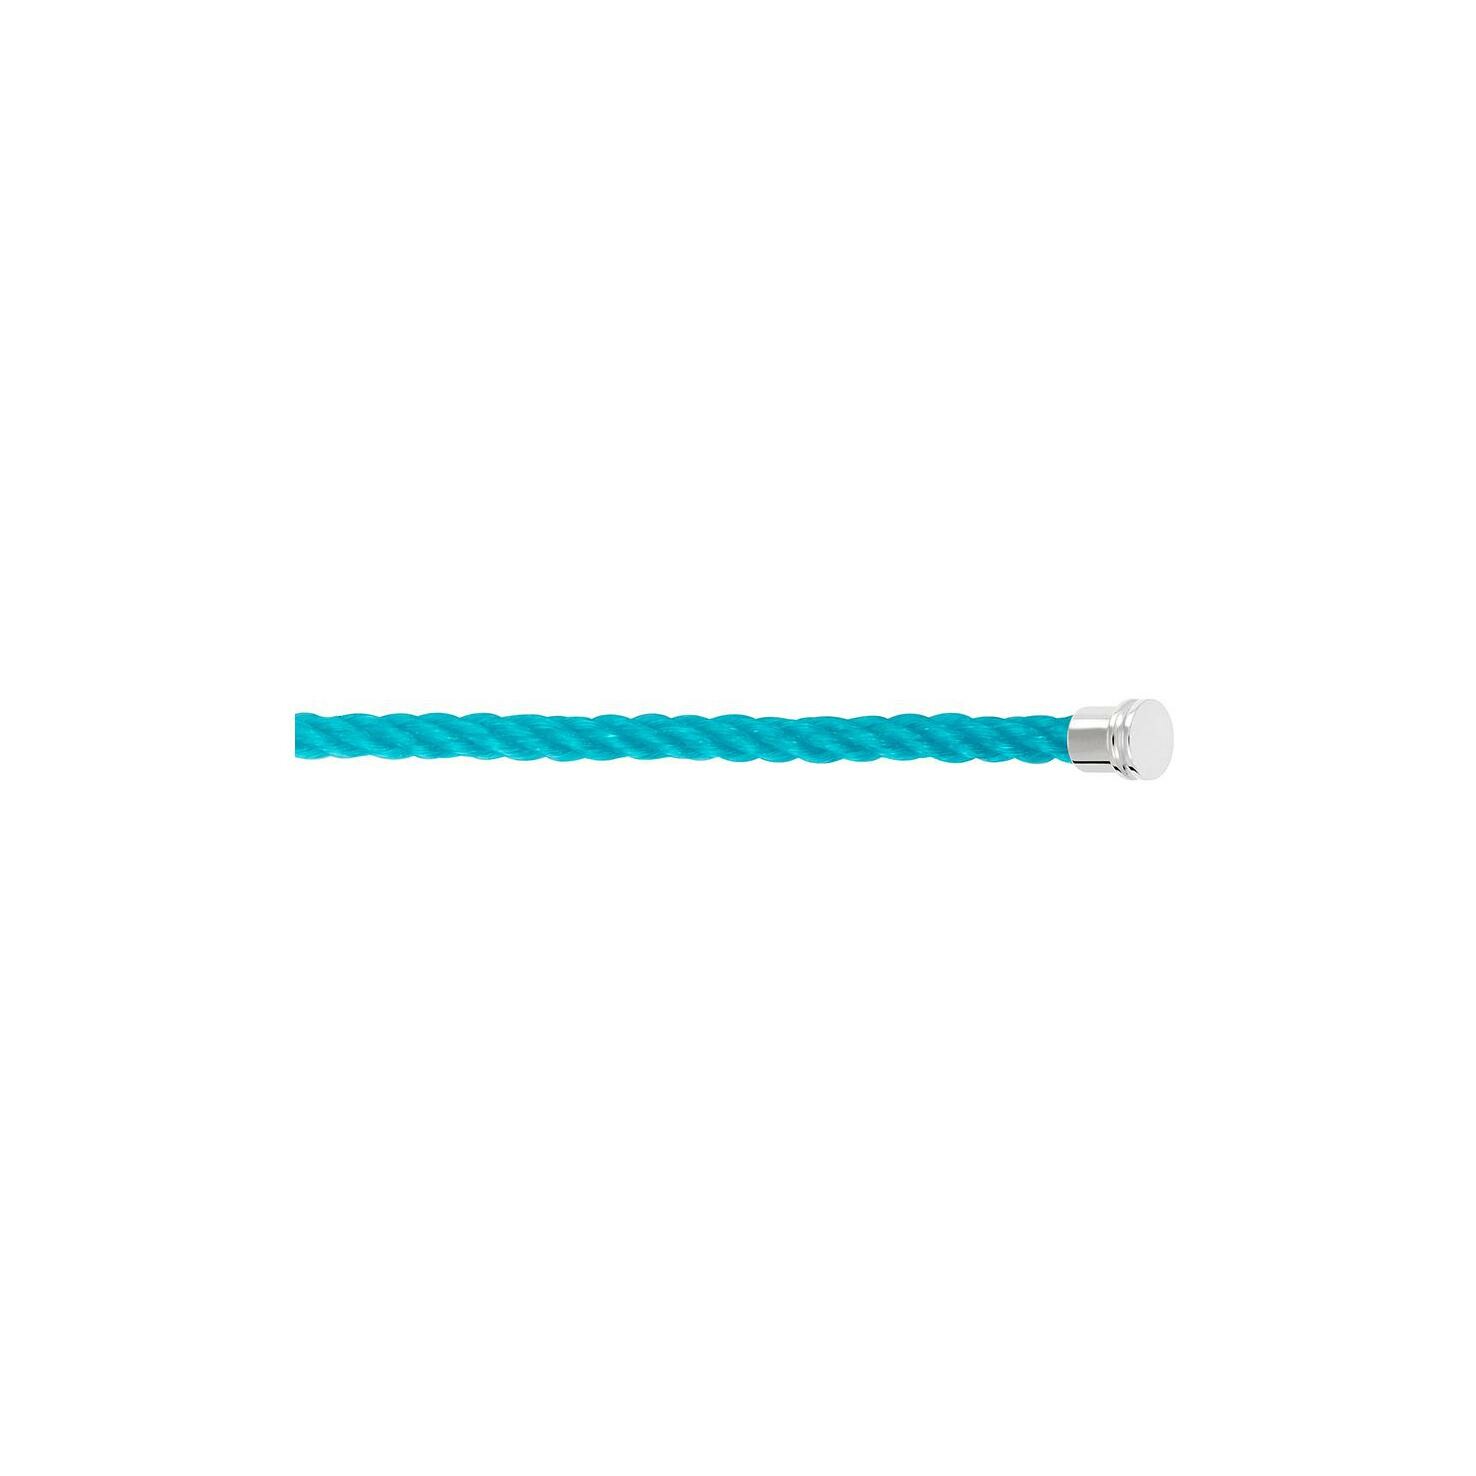 Câble FRED interchangeable Moyen Modèle en corderie bleu turquoise embouts acier vue 1